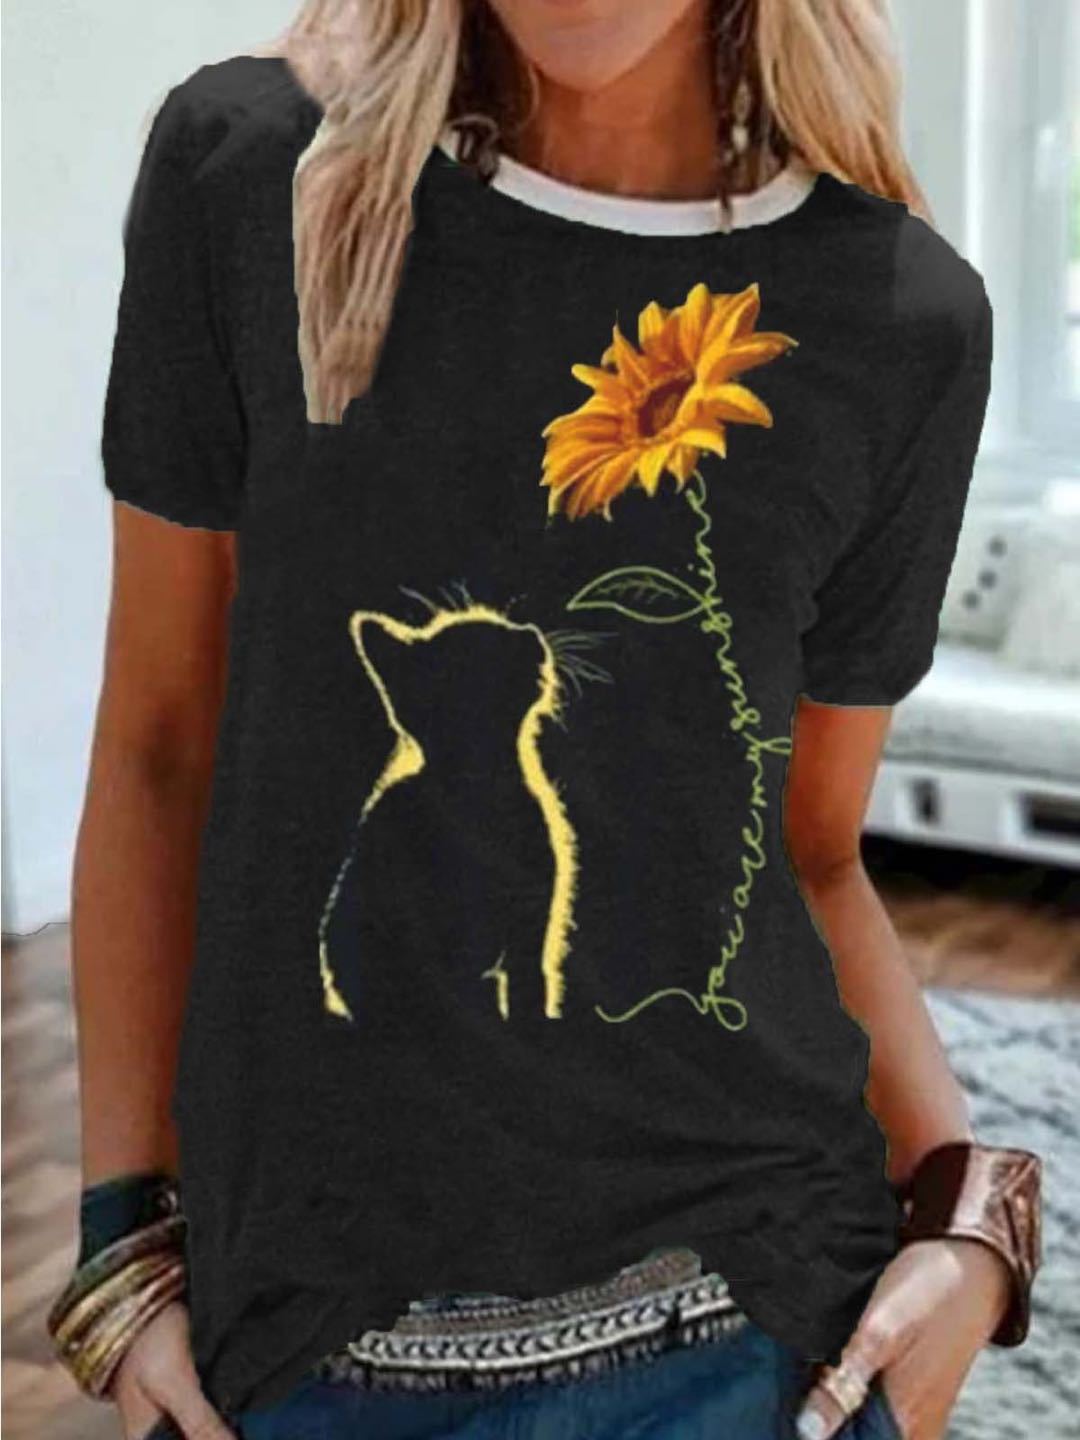 Floral Gaze Cat Tee - Women's Charming Feline & Flower T-Shirt